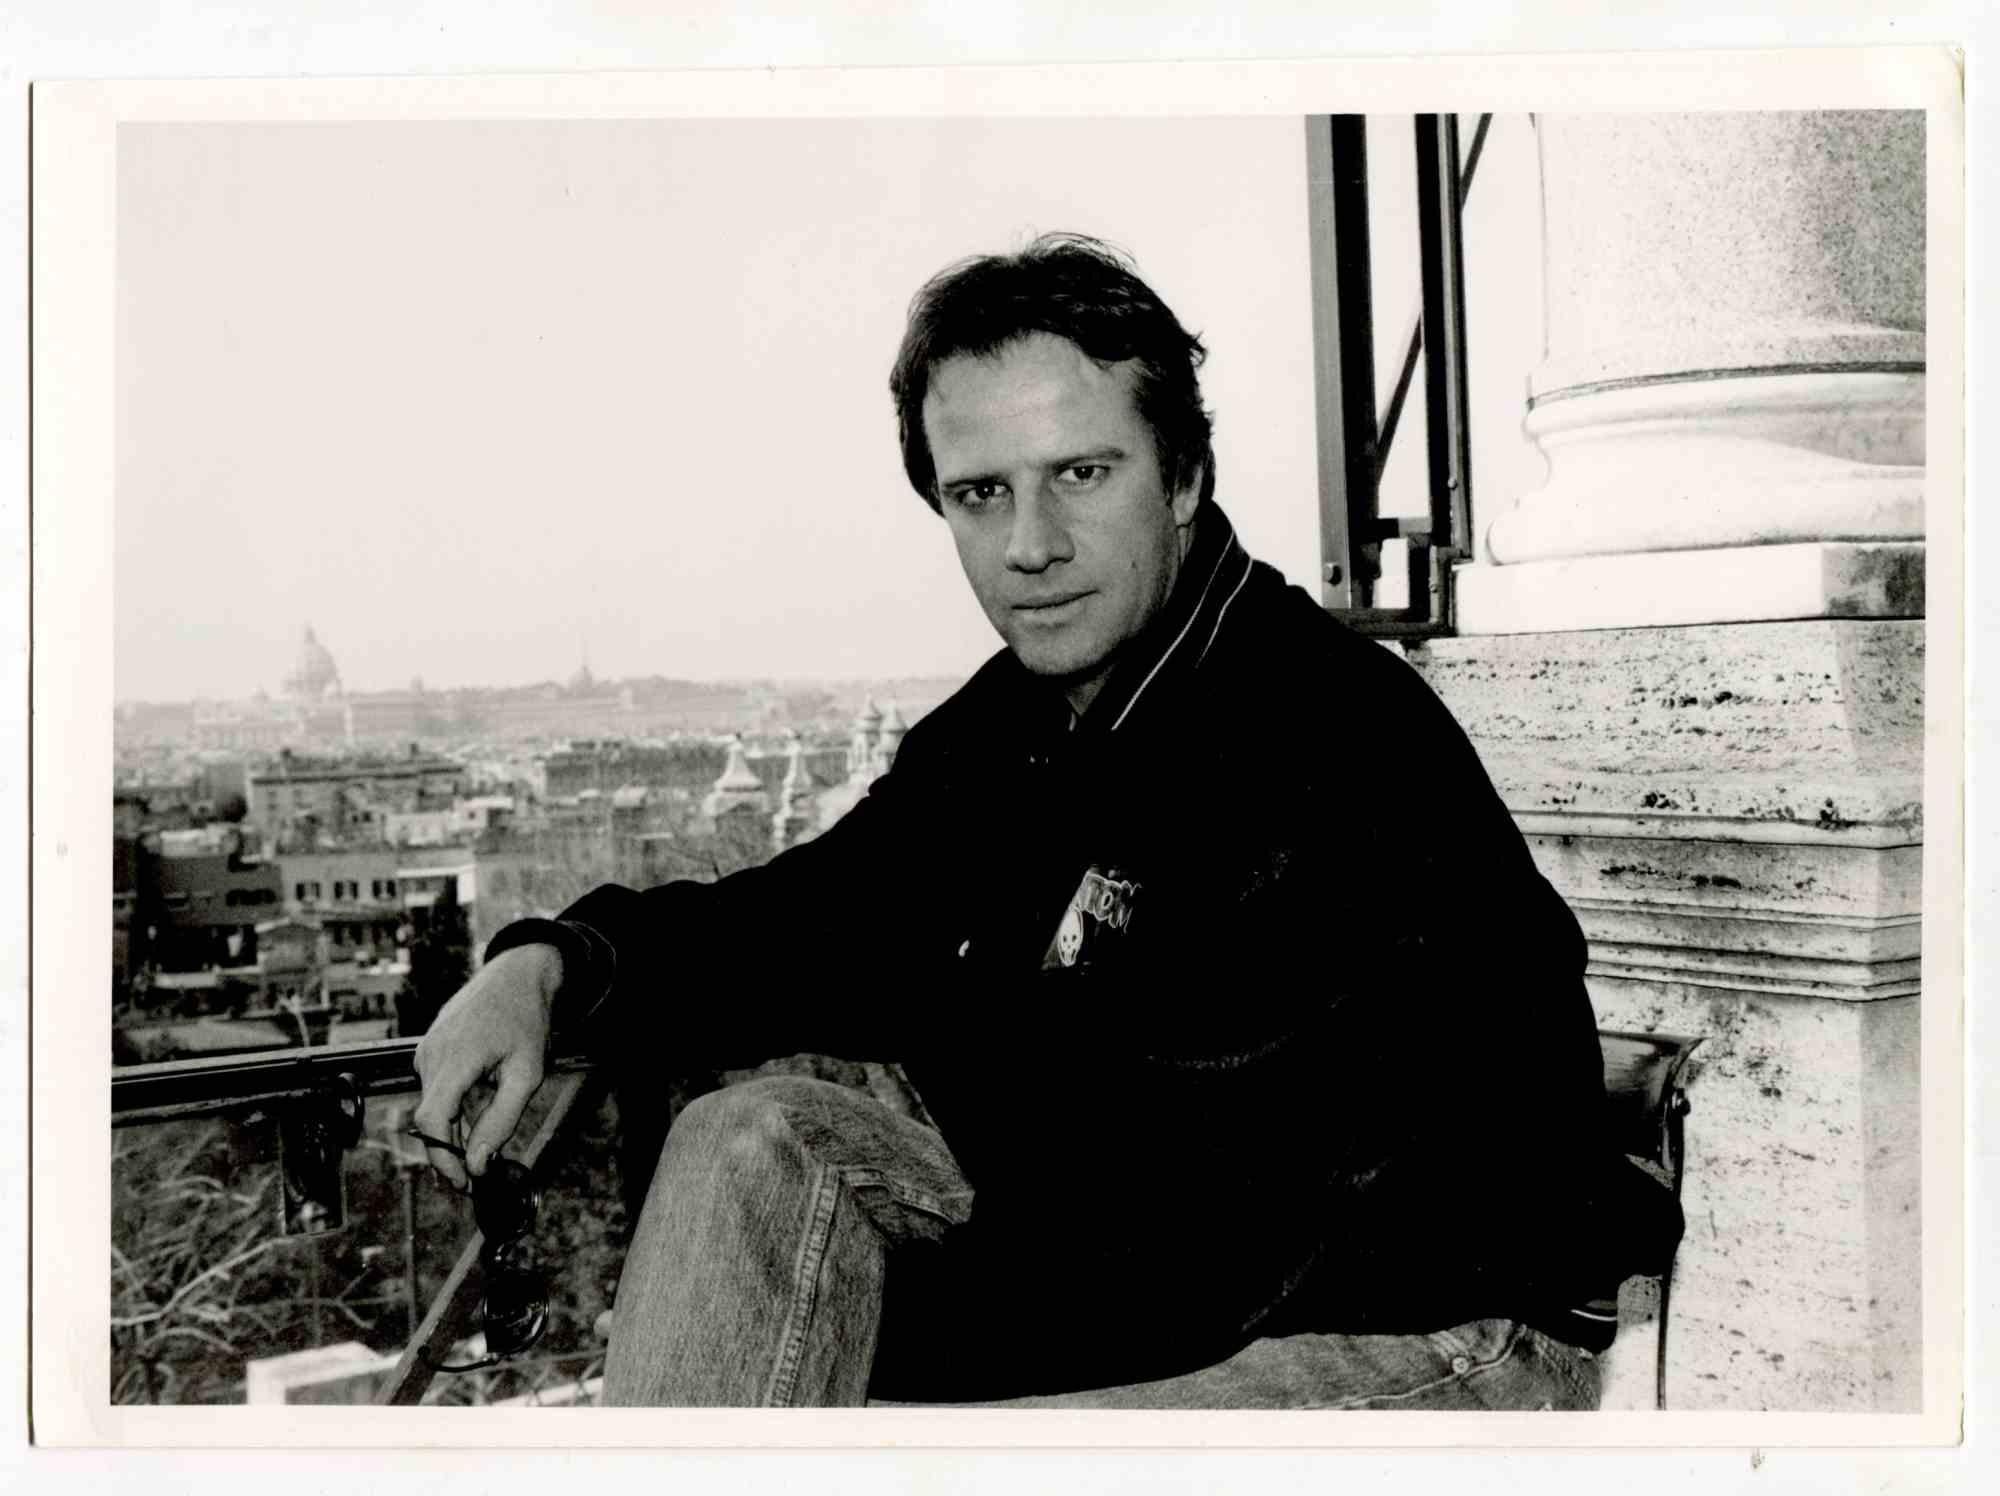 Unknown Landscape Photograph - Portrait of Christopher Lambert - Vintage Photograph - 1980s